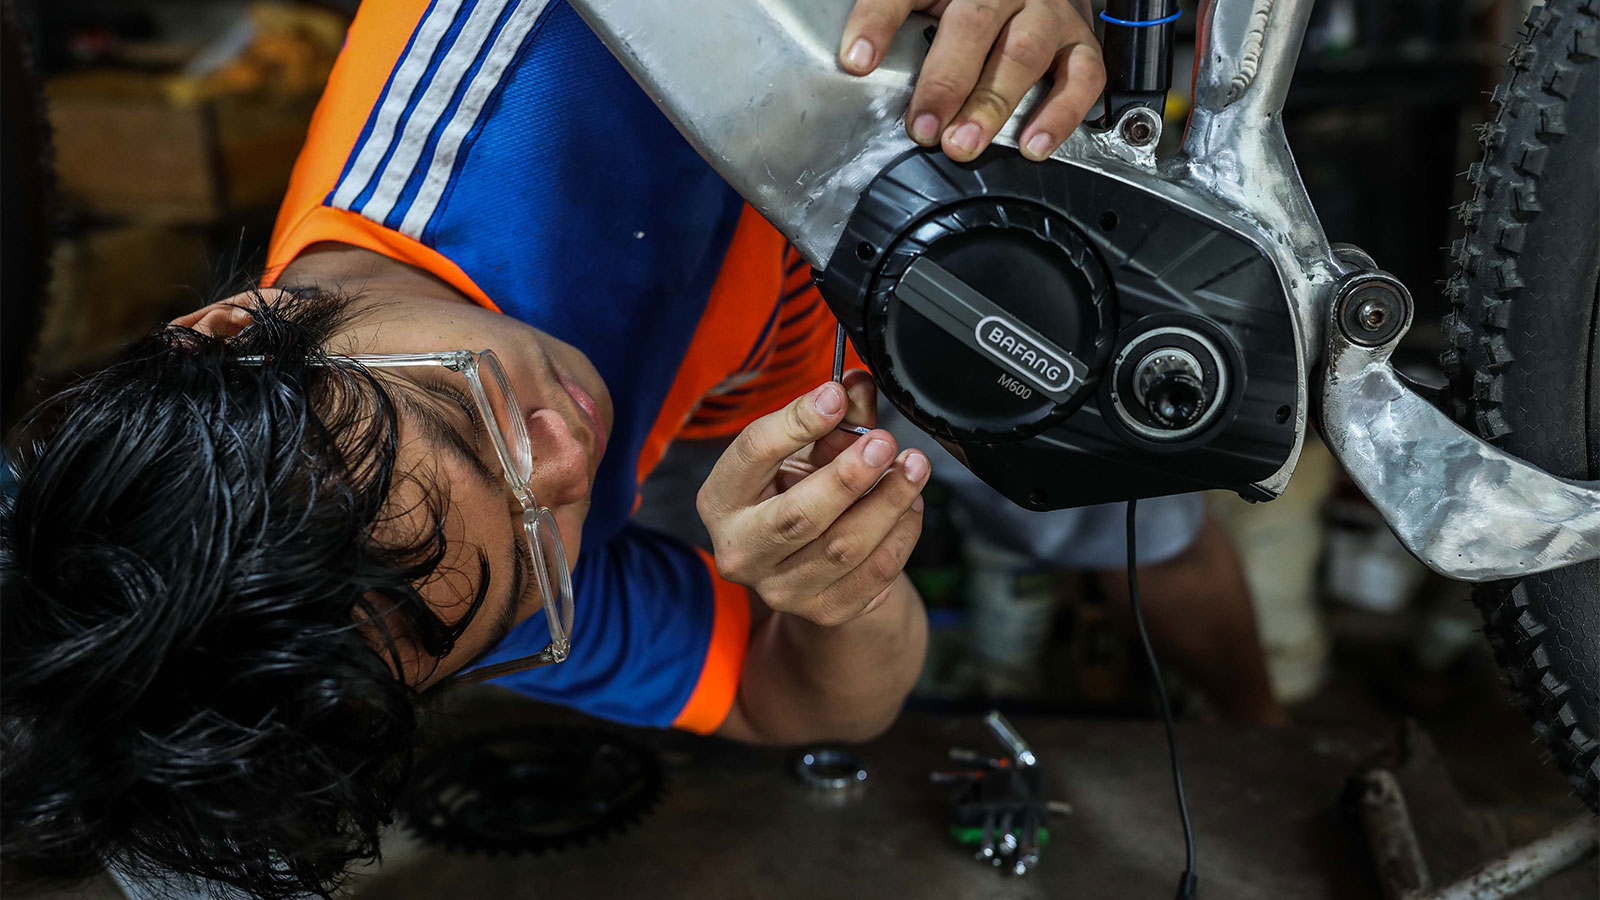 رجل يرتدي نظارات يميل للعمل على إطار دراجة إلكترونية باستخدام أداة